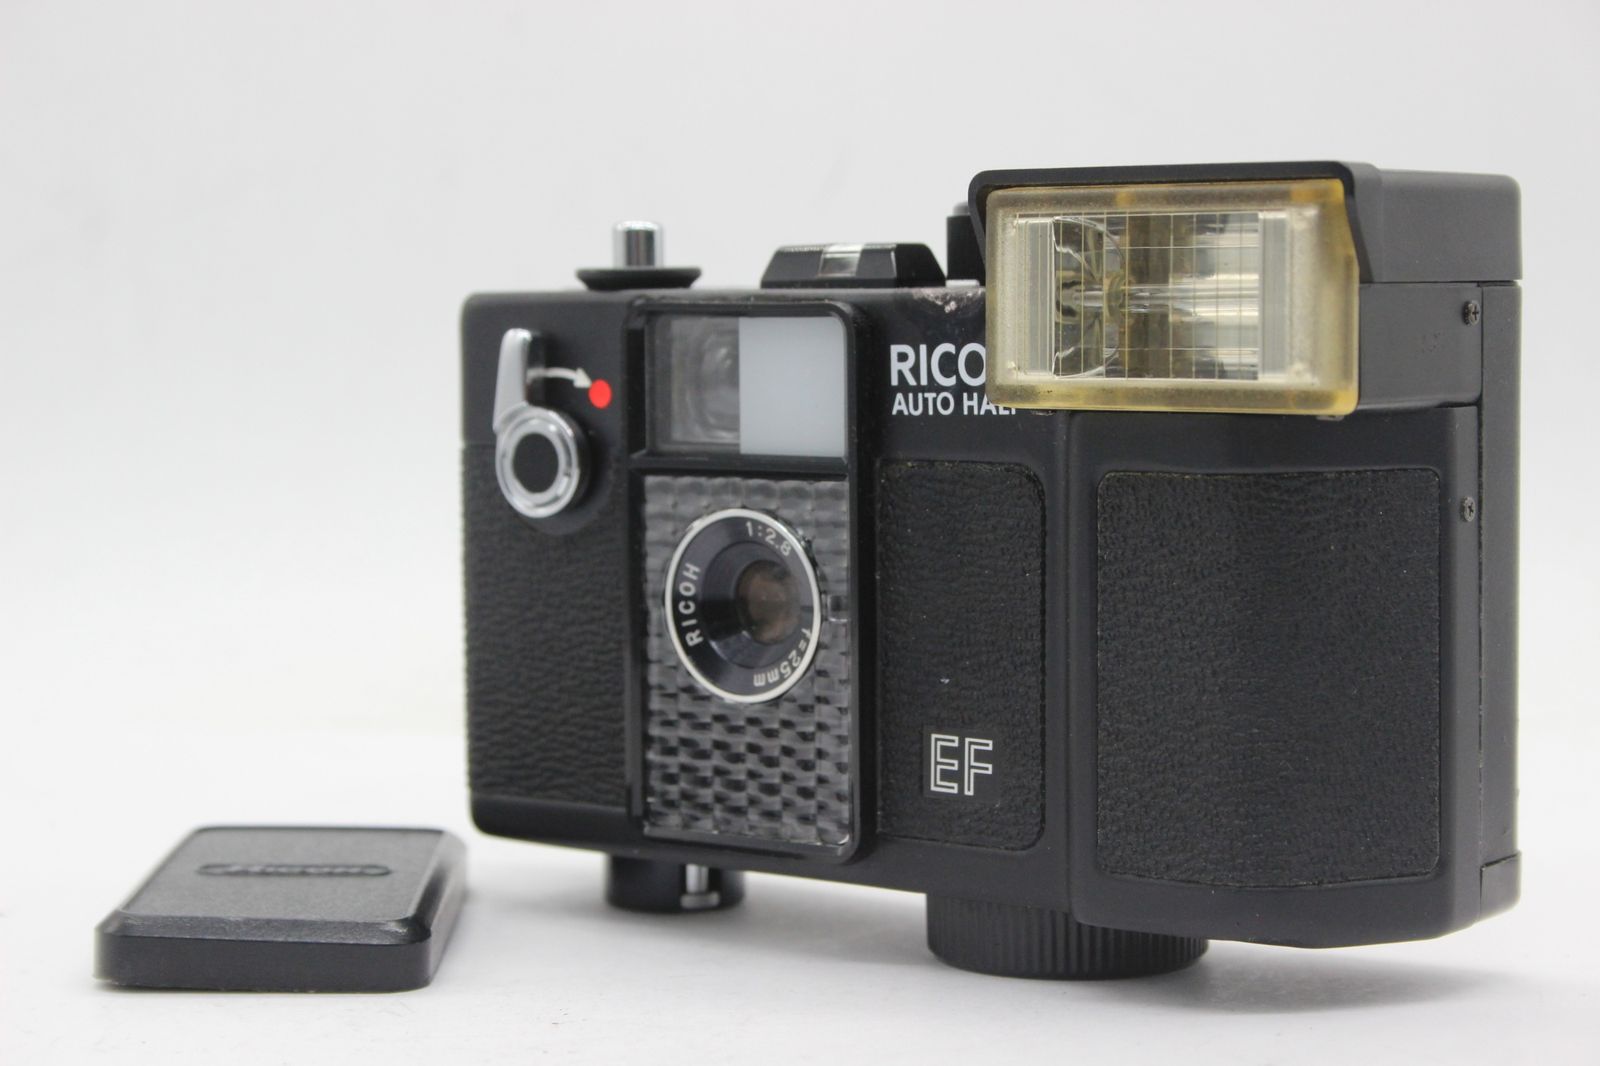 訳あり品】 リコー Ricoh Auto Half EF 25mm F2.8 コンパクトカメラ s7654 - メルカリ